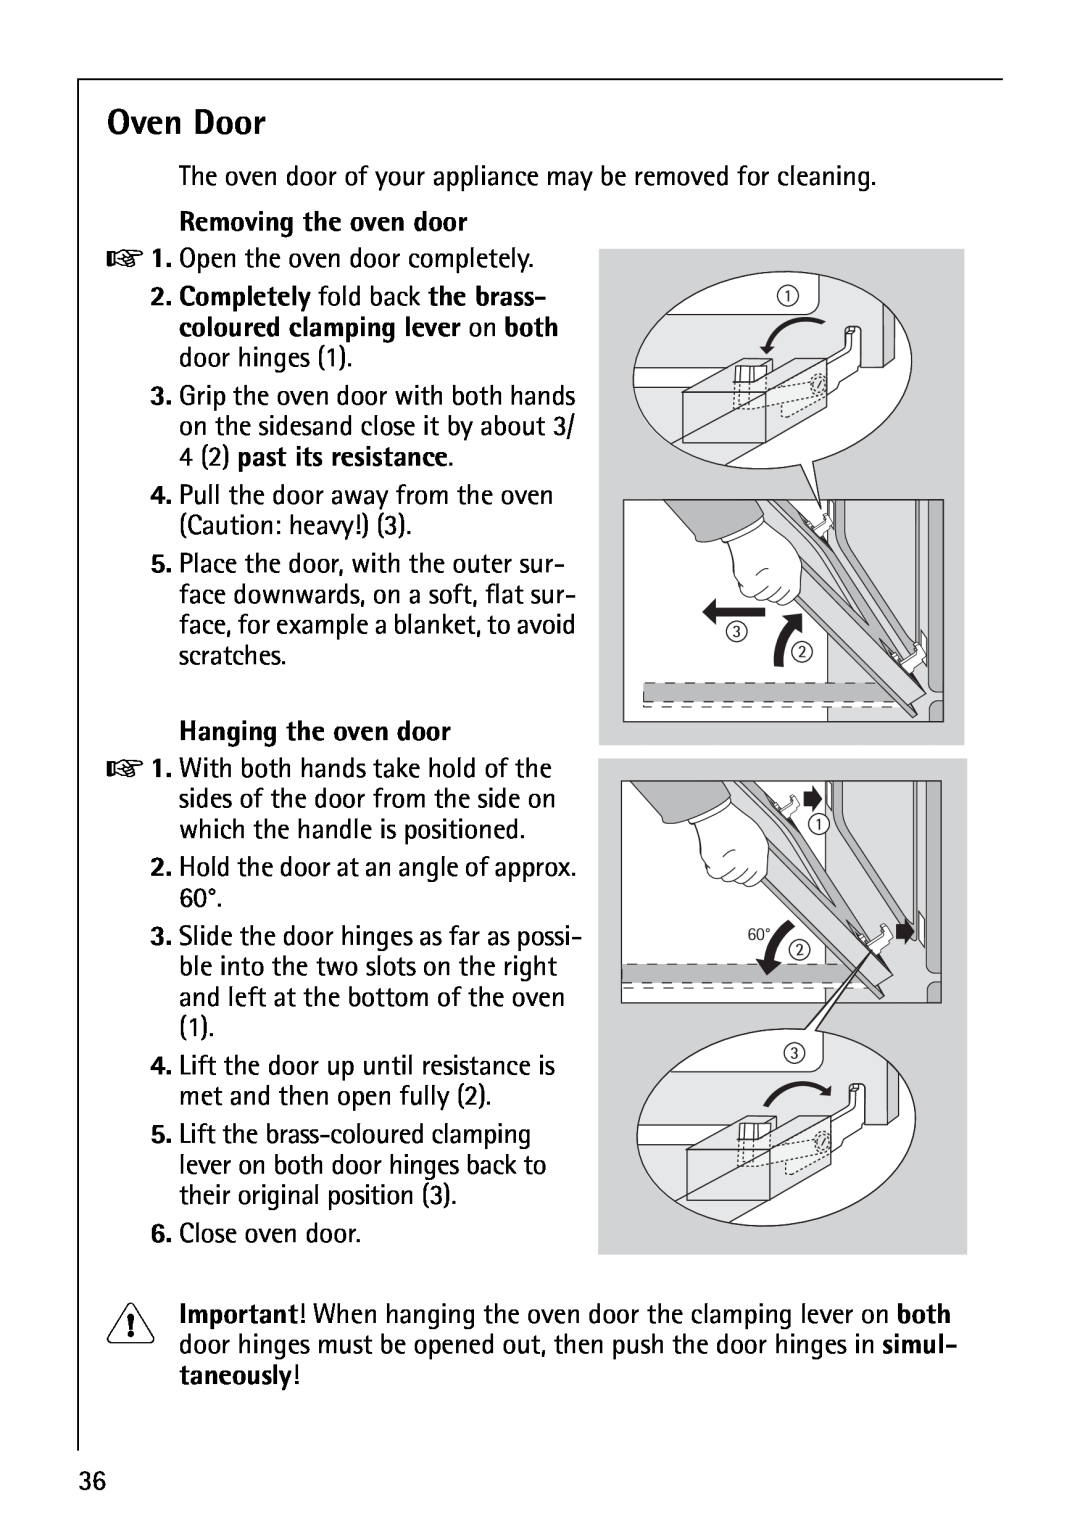 AEG E3000-1 manual Oven Door, Removing the oven door, Hanging the oven door 